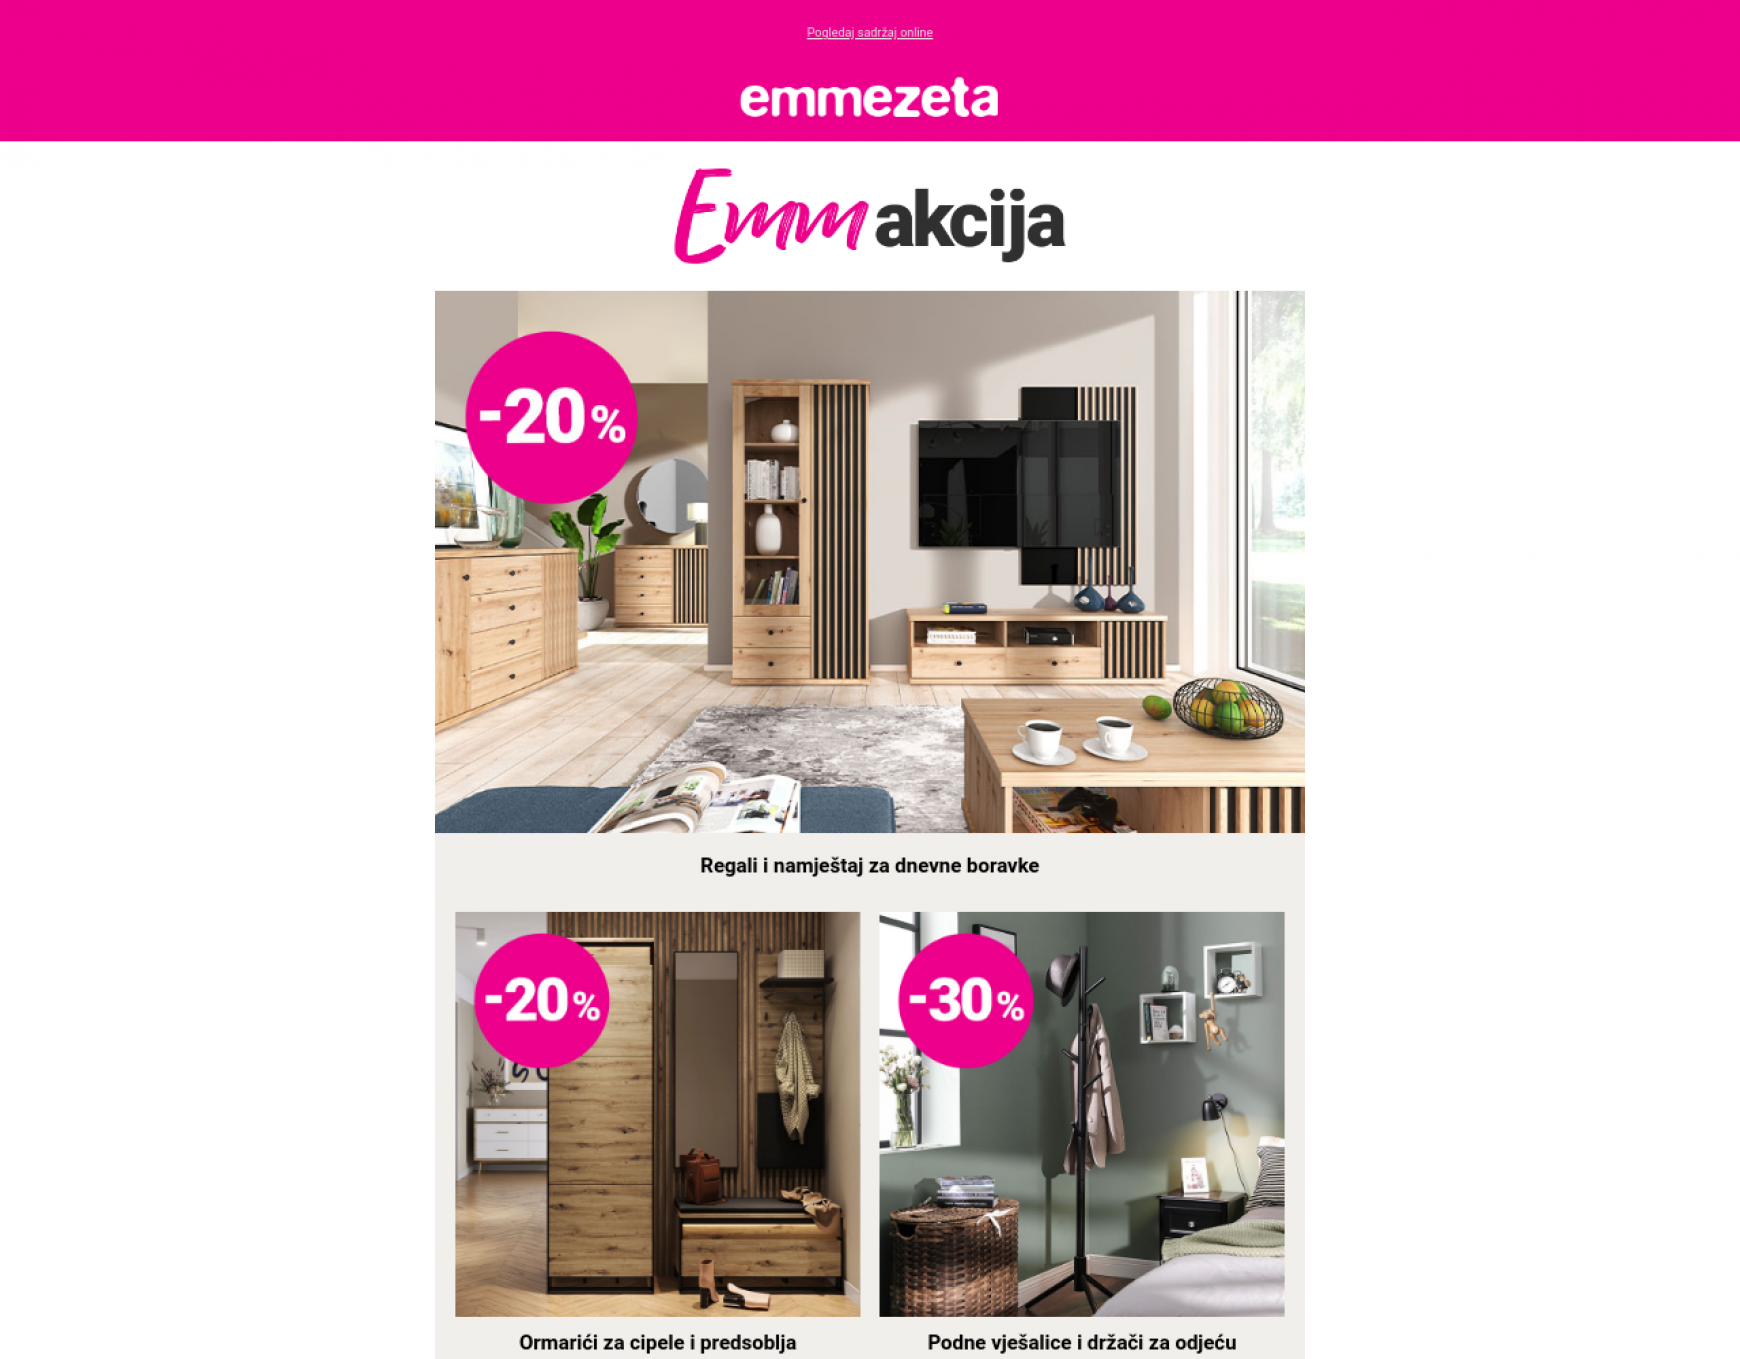 emmezeta - Emmezeta 23.05. - page: 1